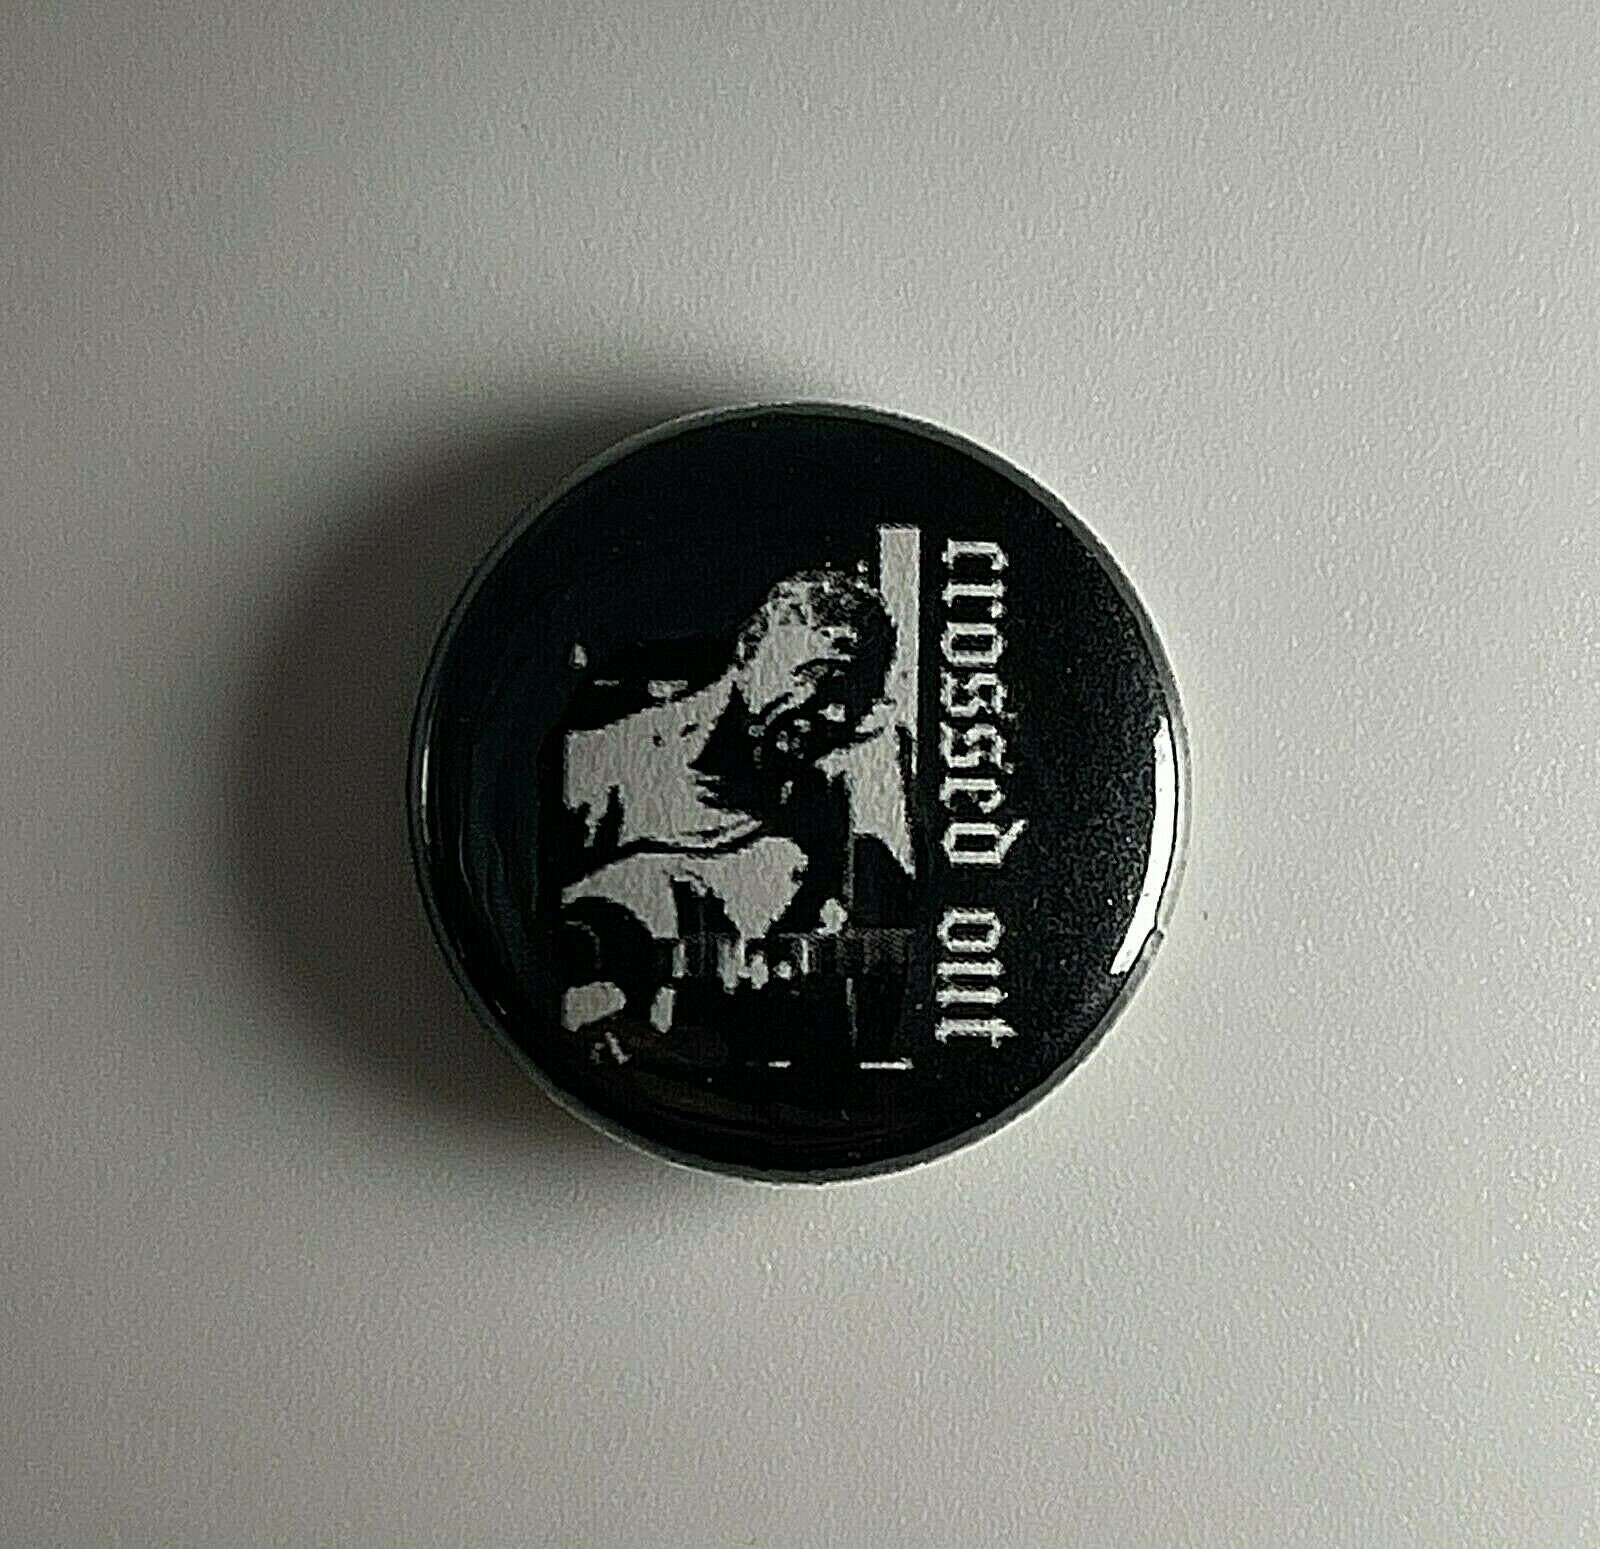 Crossed Out Power Gewalt 2, 5 cm Button C010B Badge Pin von Heavylowmerchandise